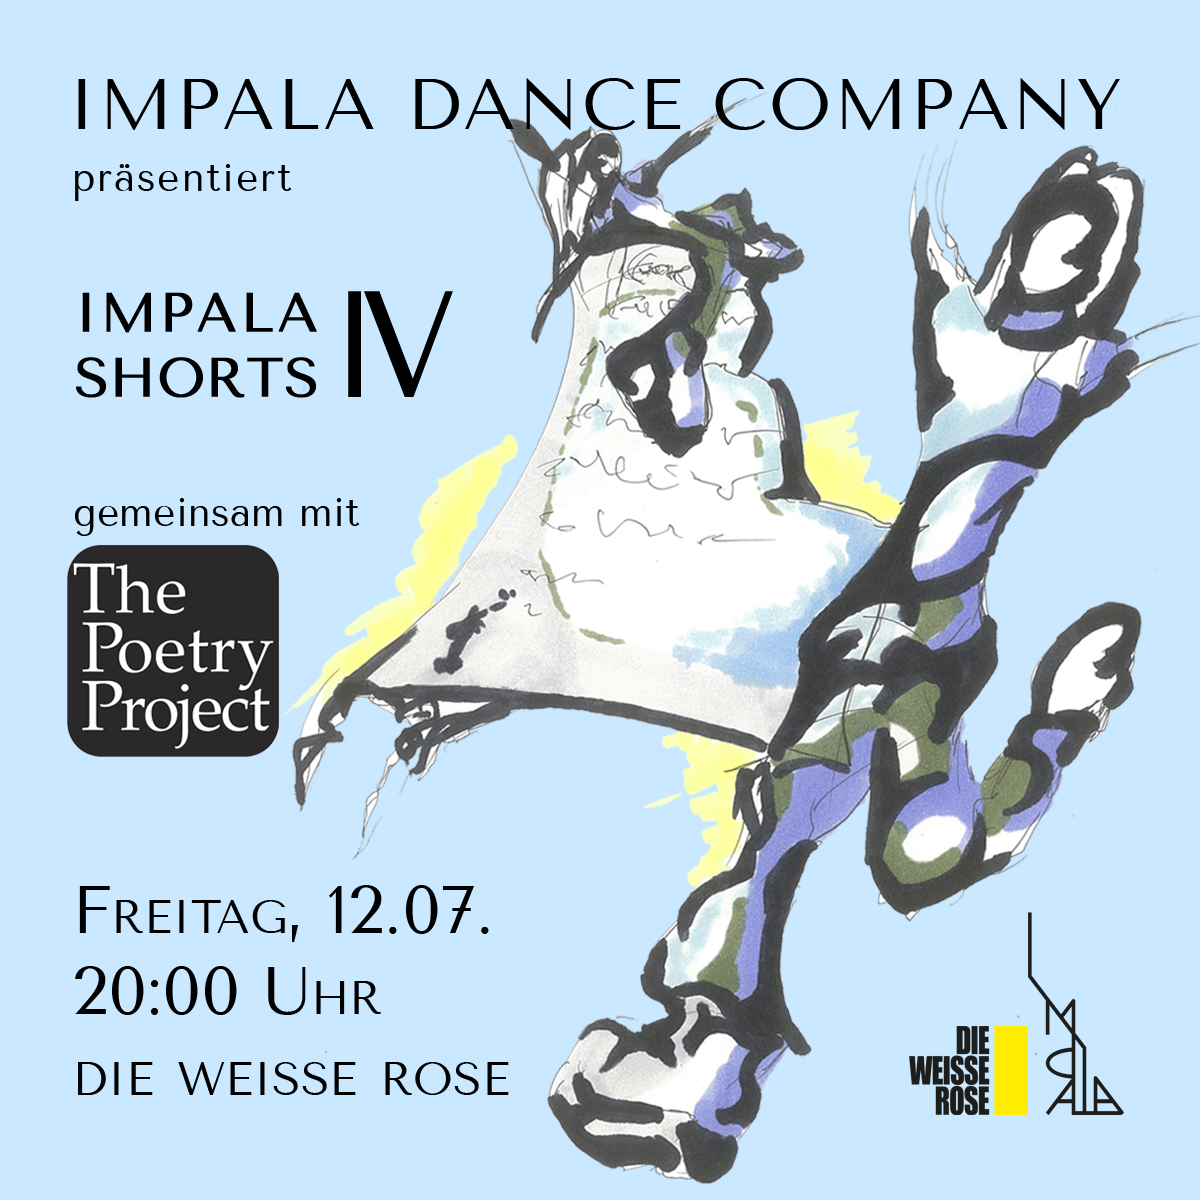 flyer für die veranstaltung der impala dance company "IMPALA SHORTS IV"